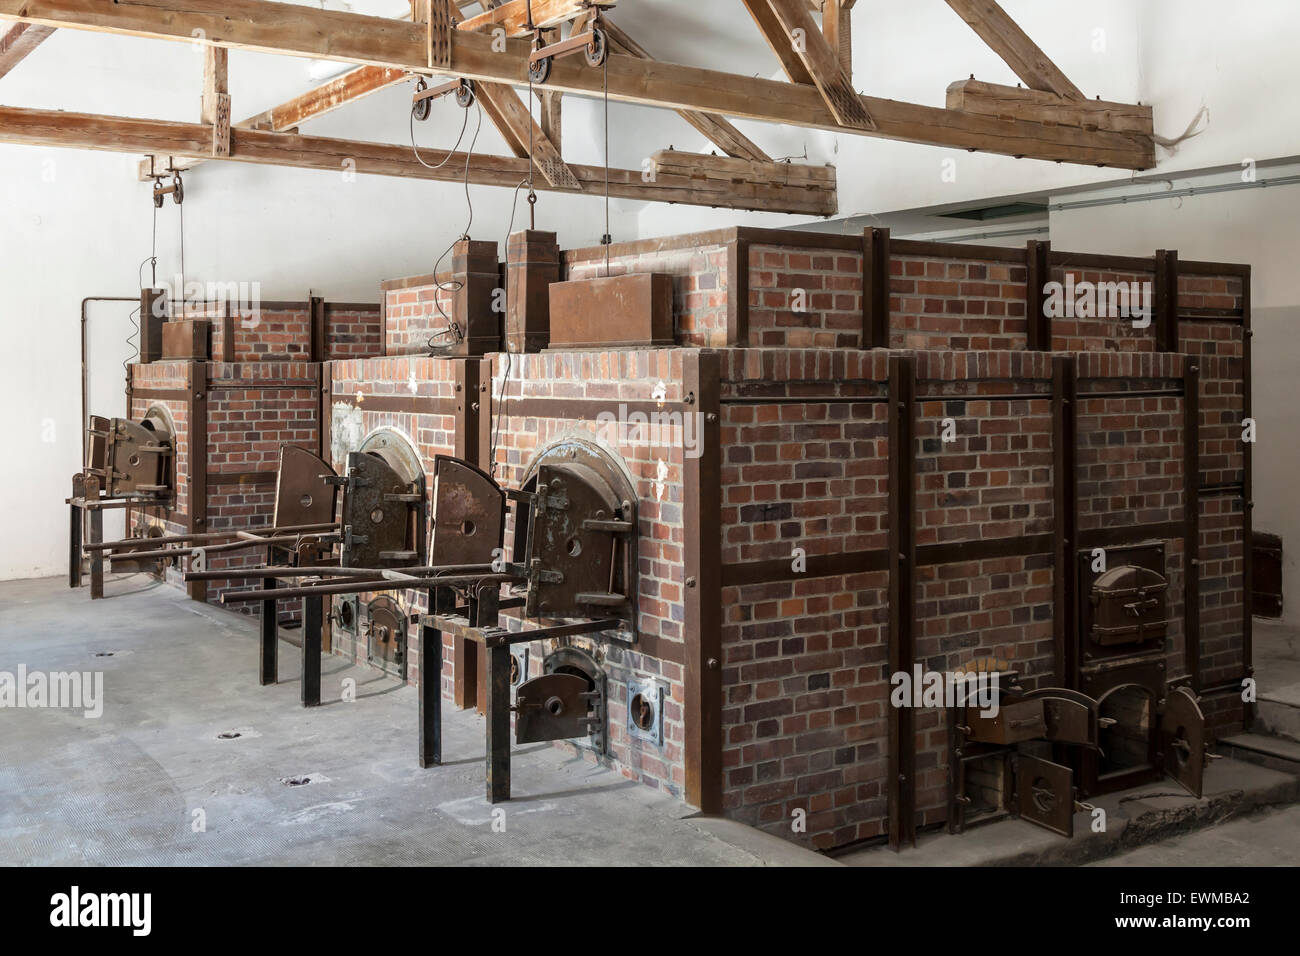 The crematorium inside Barrack X. Stock Photo